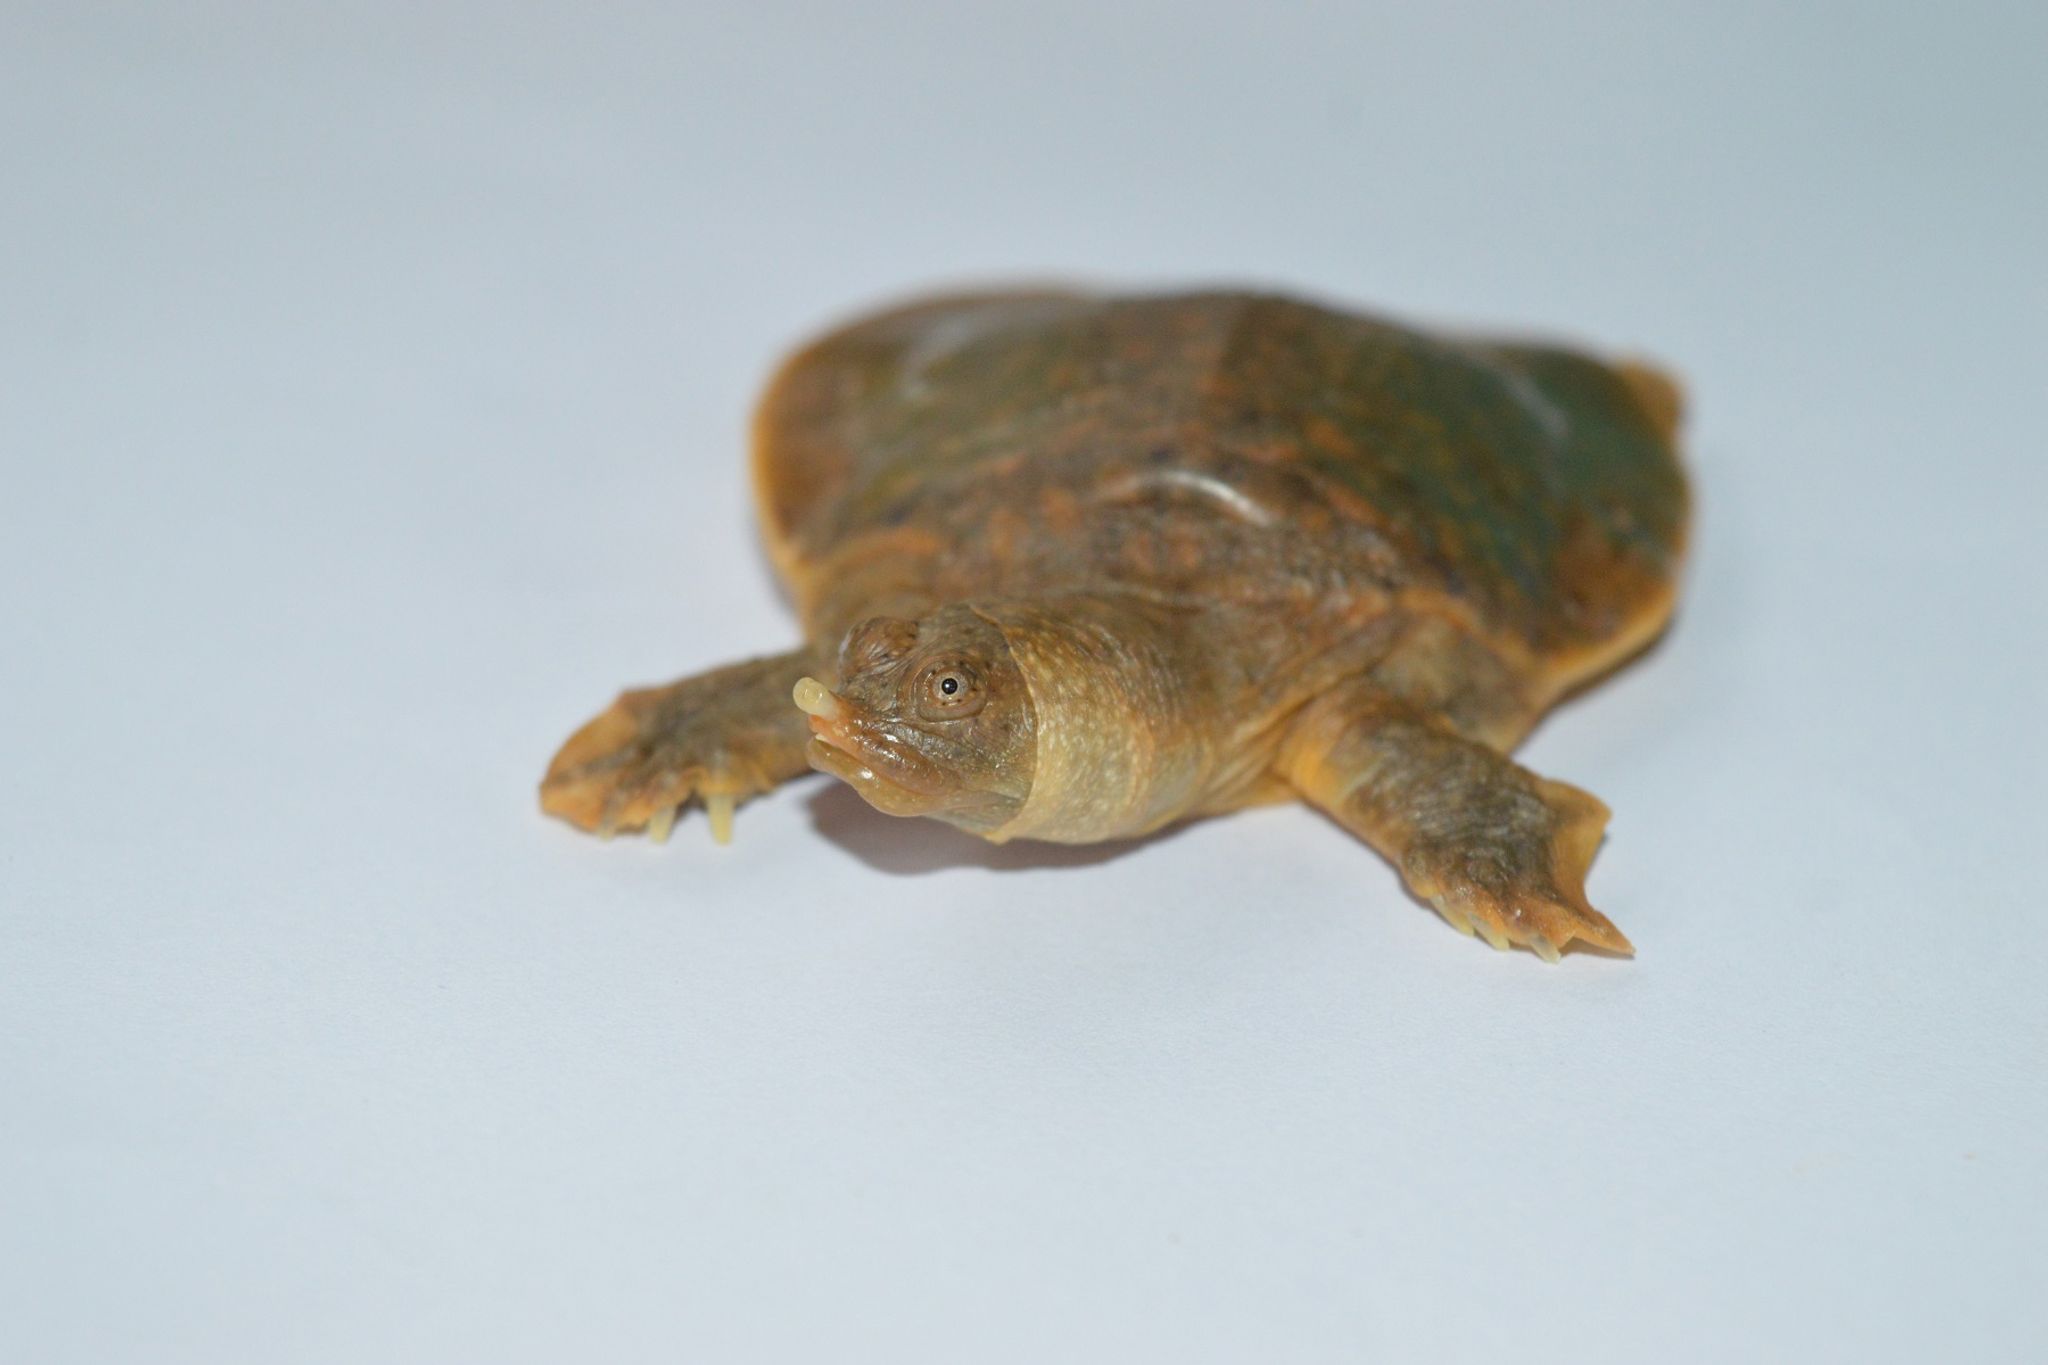 extrem seltene schildkröte in indien entdeckt